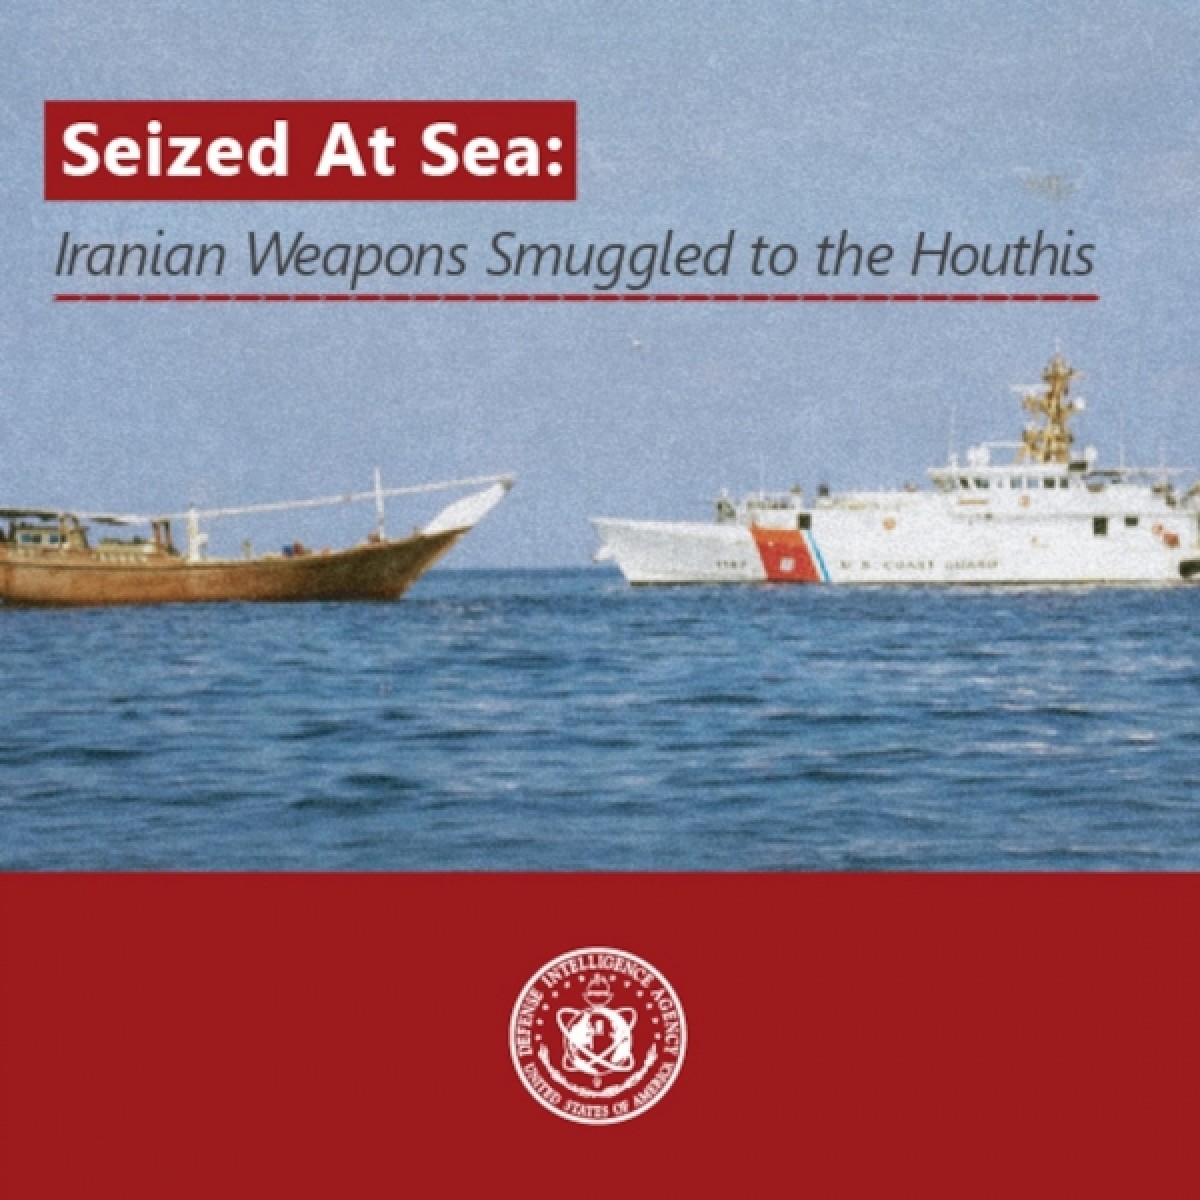 تقرير استخباراتي أمريكي يوثق استخدام الحوثيين أسلحة إيرانية في هجماتهم البحرية